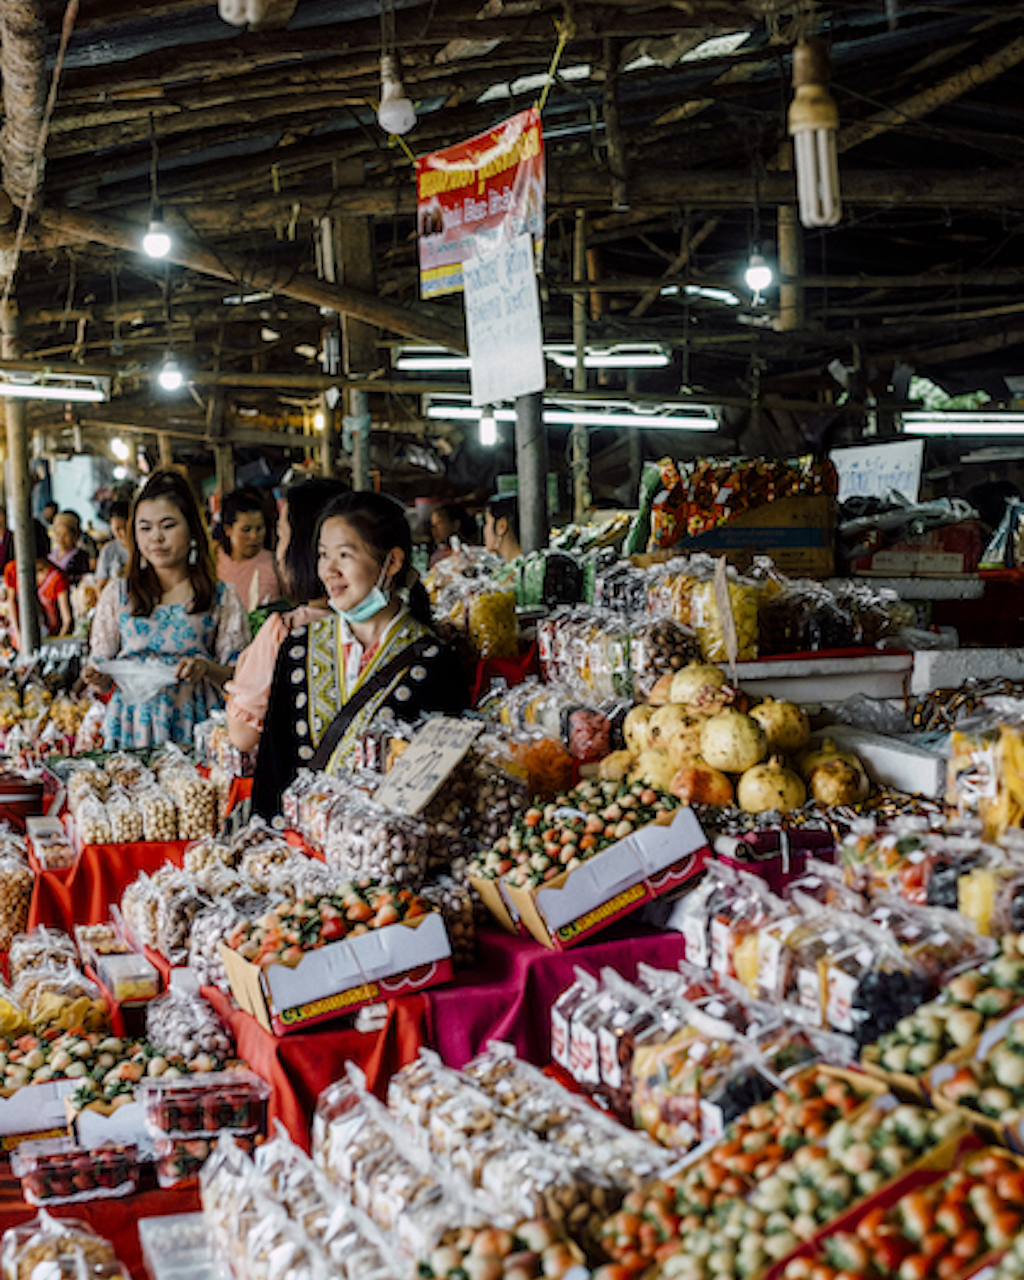 Hmong market on Doi Inthanon chiang mai silkwinds